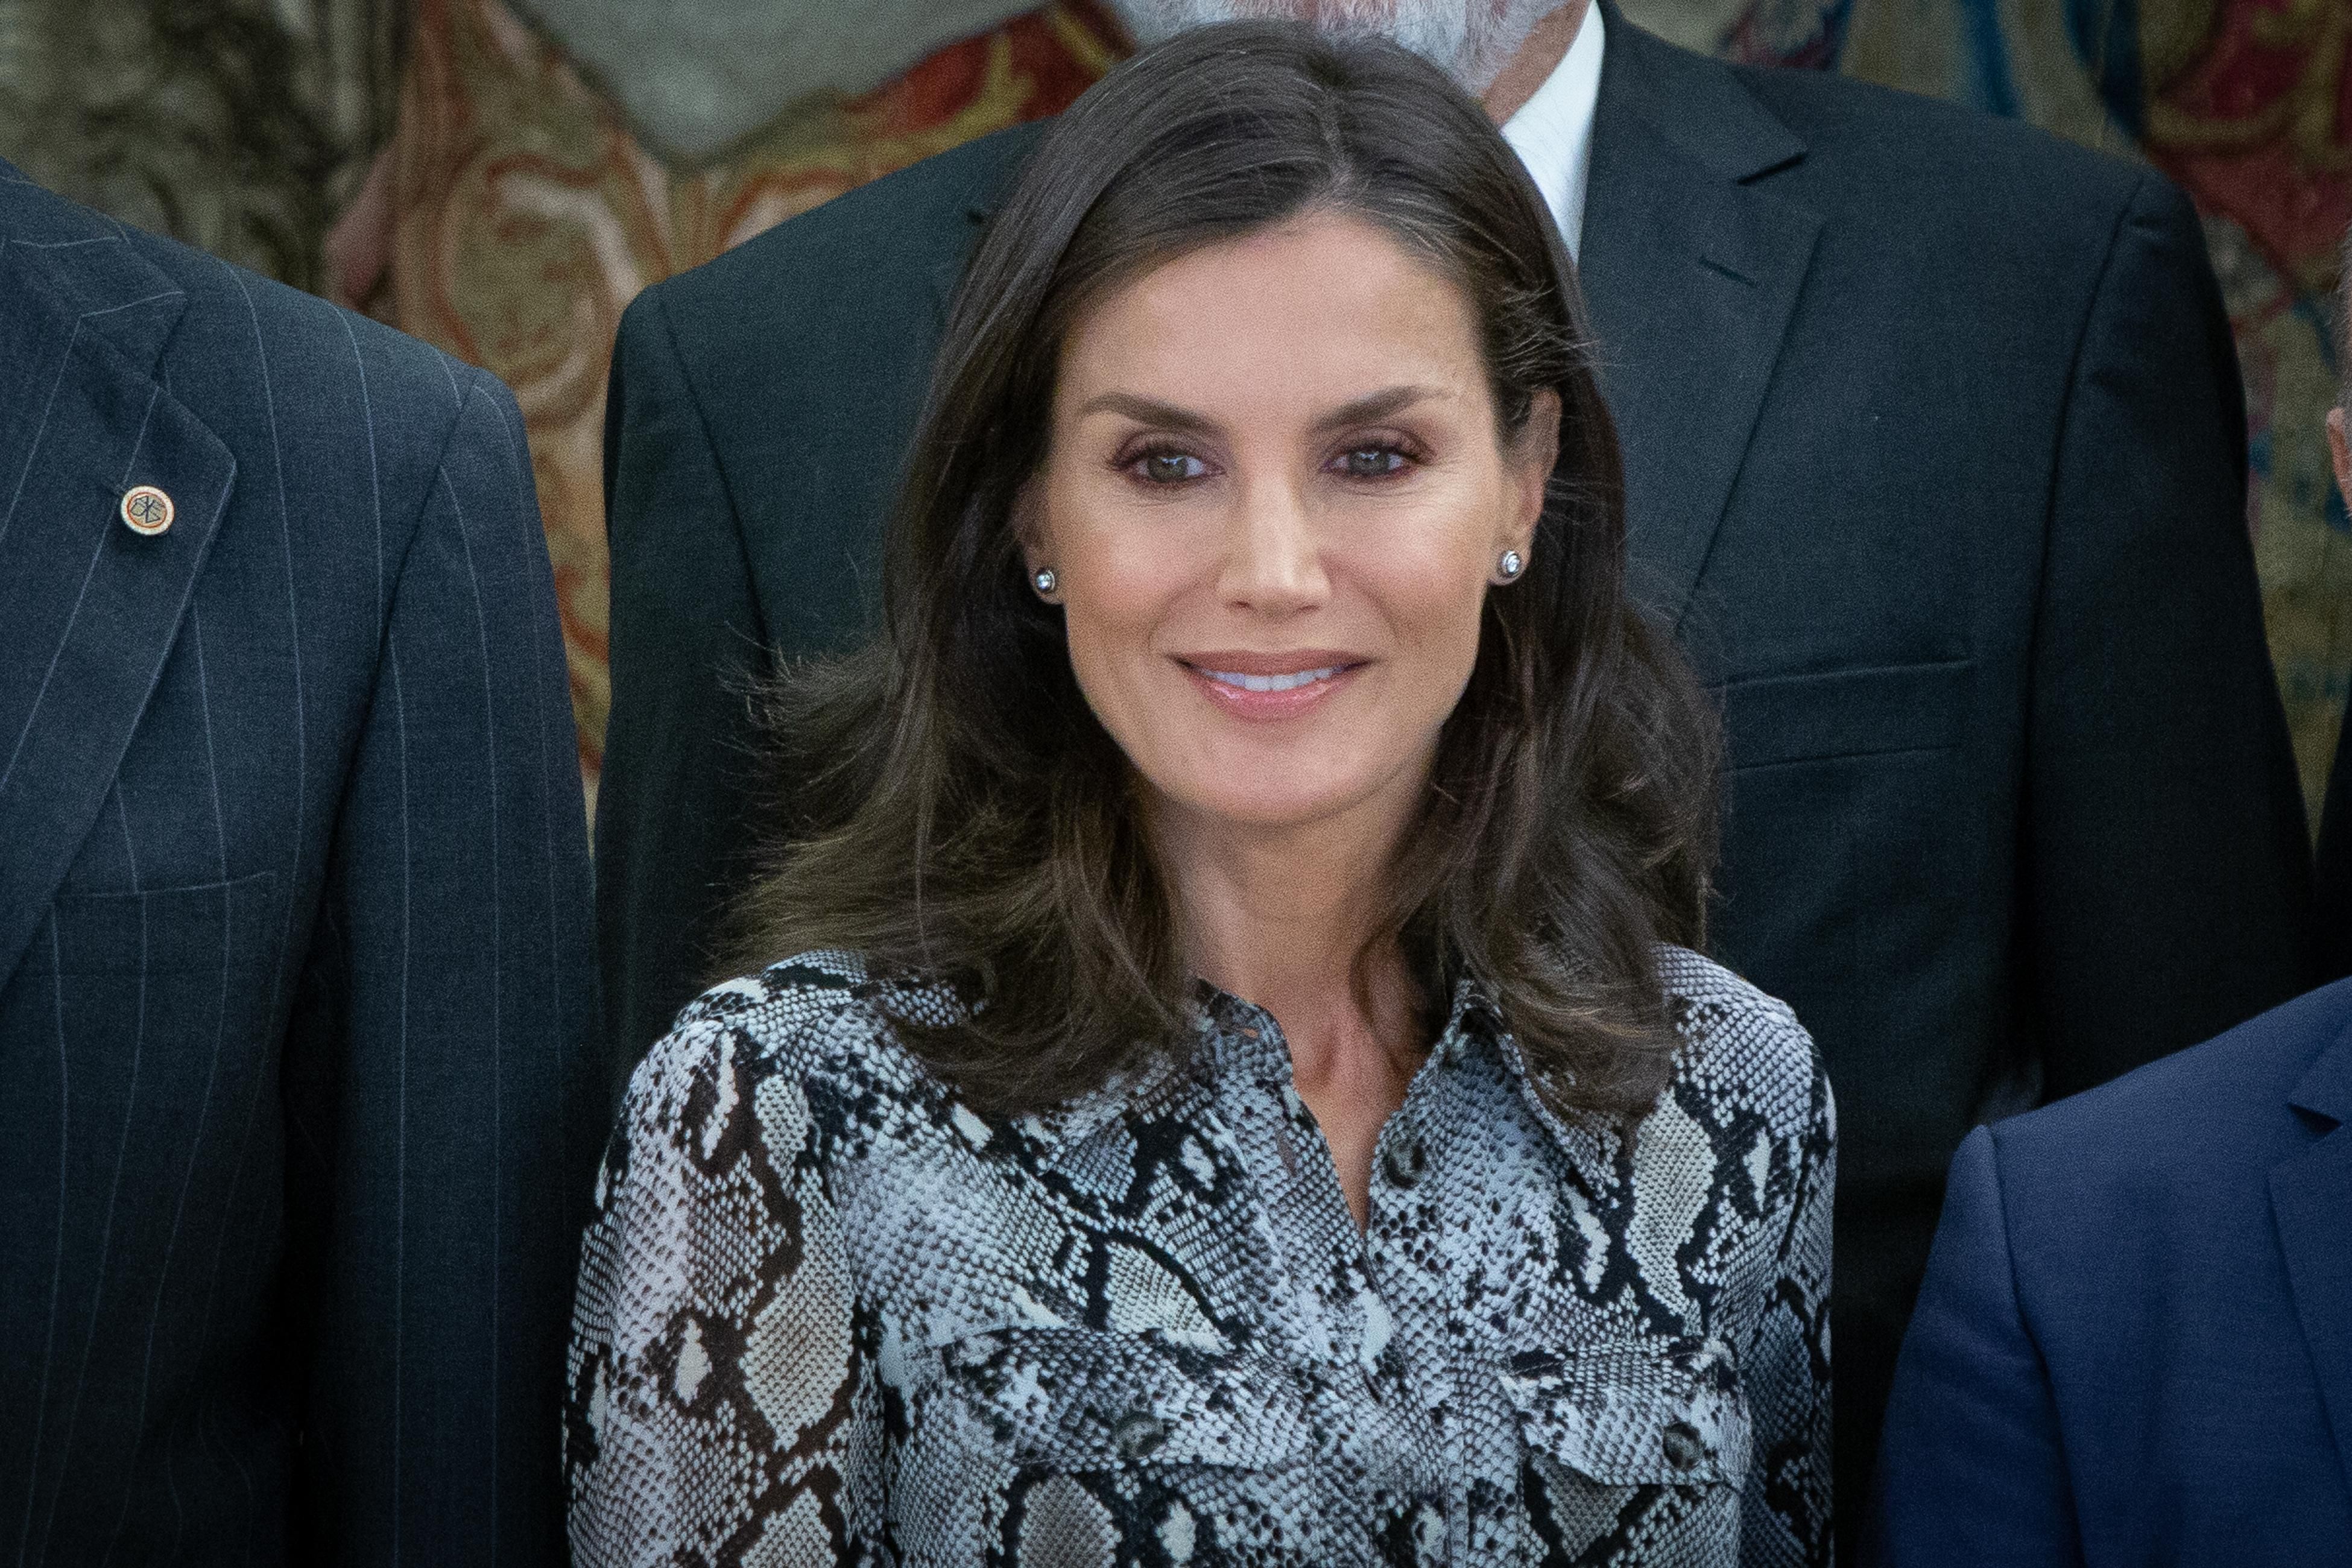 Королева Іспанії Летиція одягнула бюджетне плаття з пітоновим принтом на офіційний захід: фото